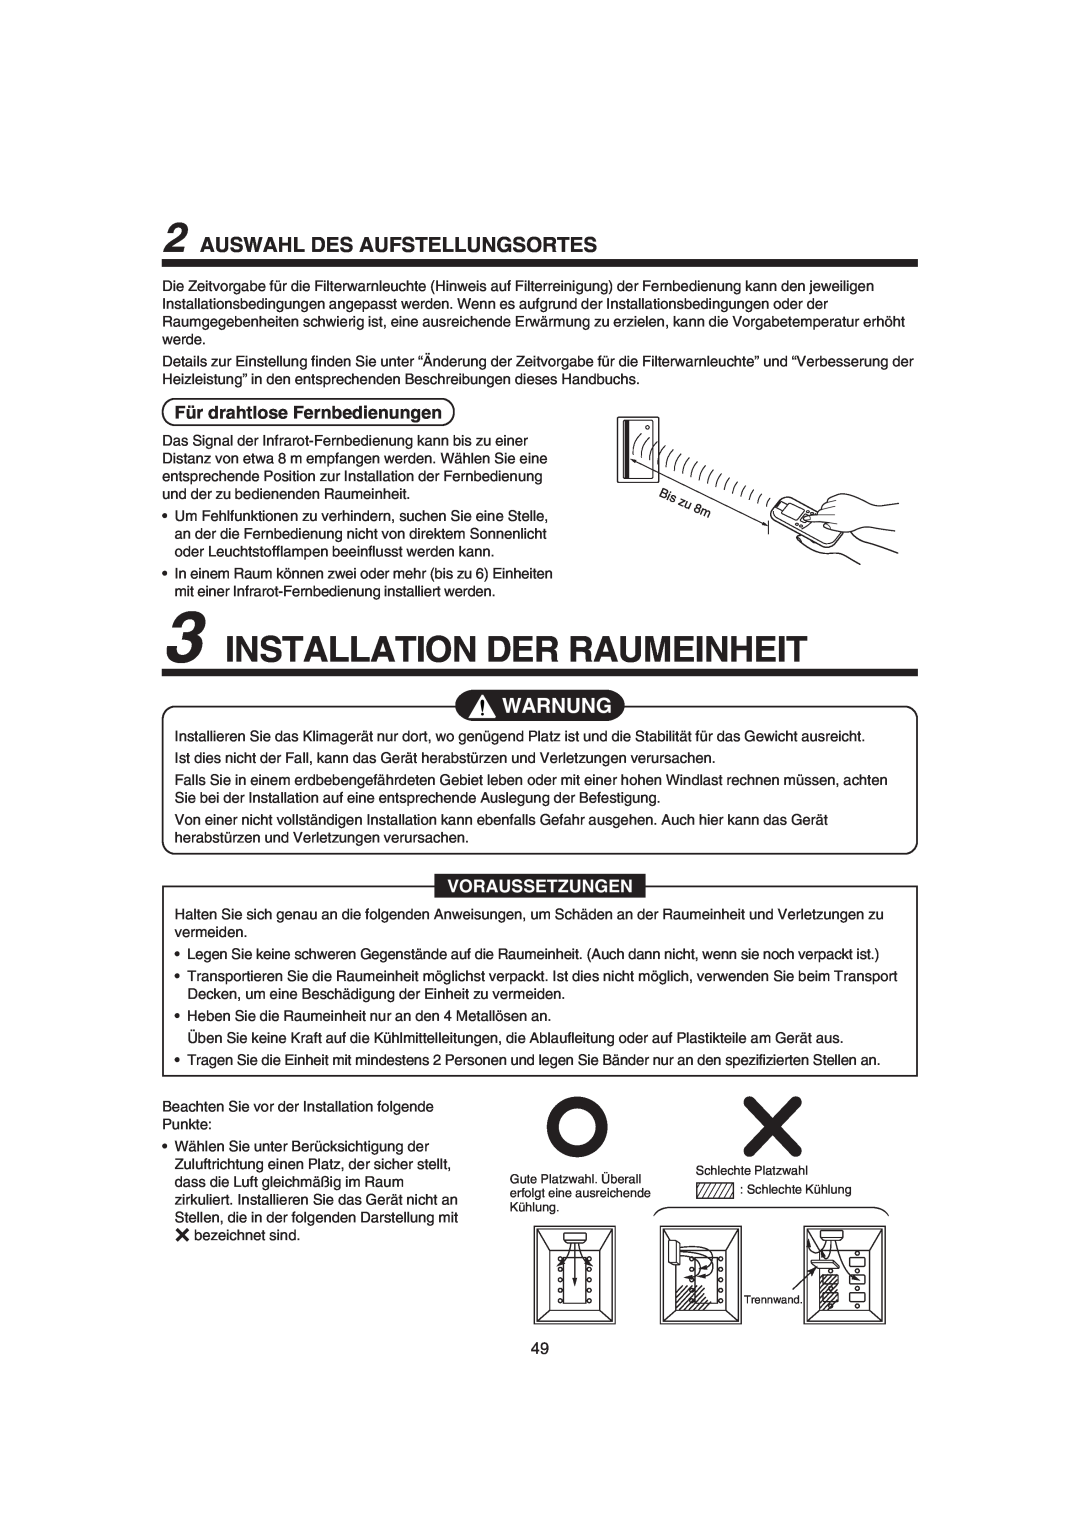 Pentax MMK-AP0181H Installation Der Raumeinheit, Auswahl Des Aufstellungsortes, Für drahtlose Fernbedienungen, Warnung 